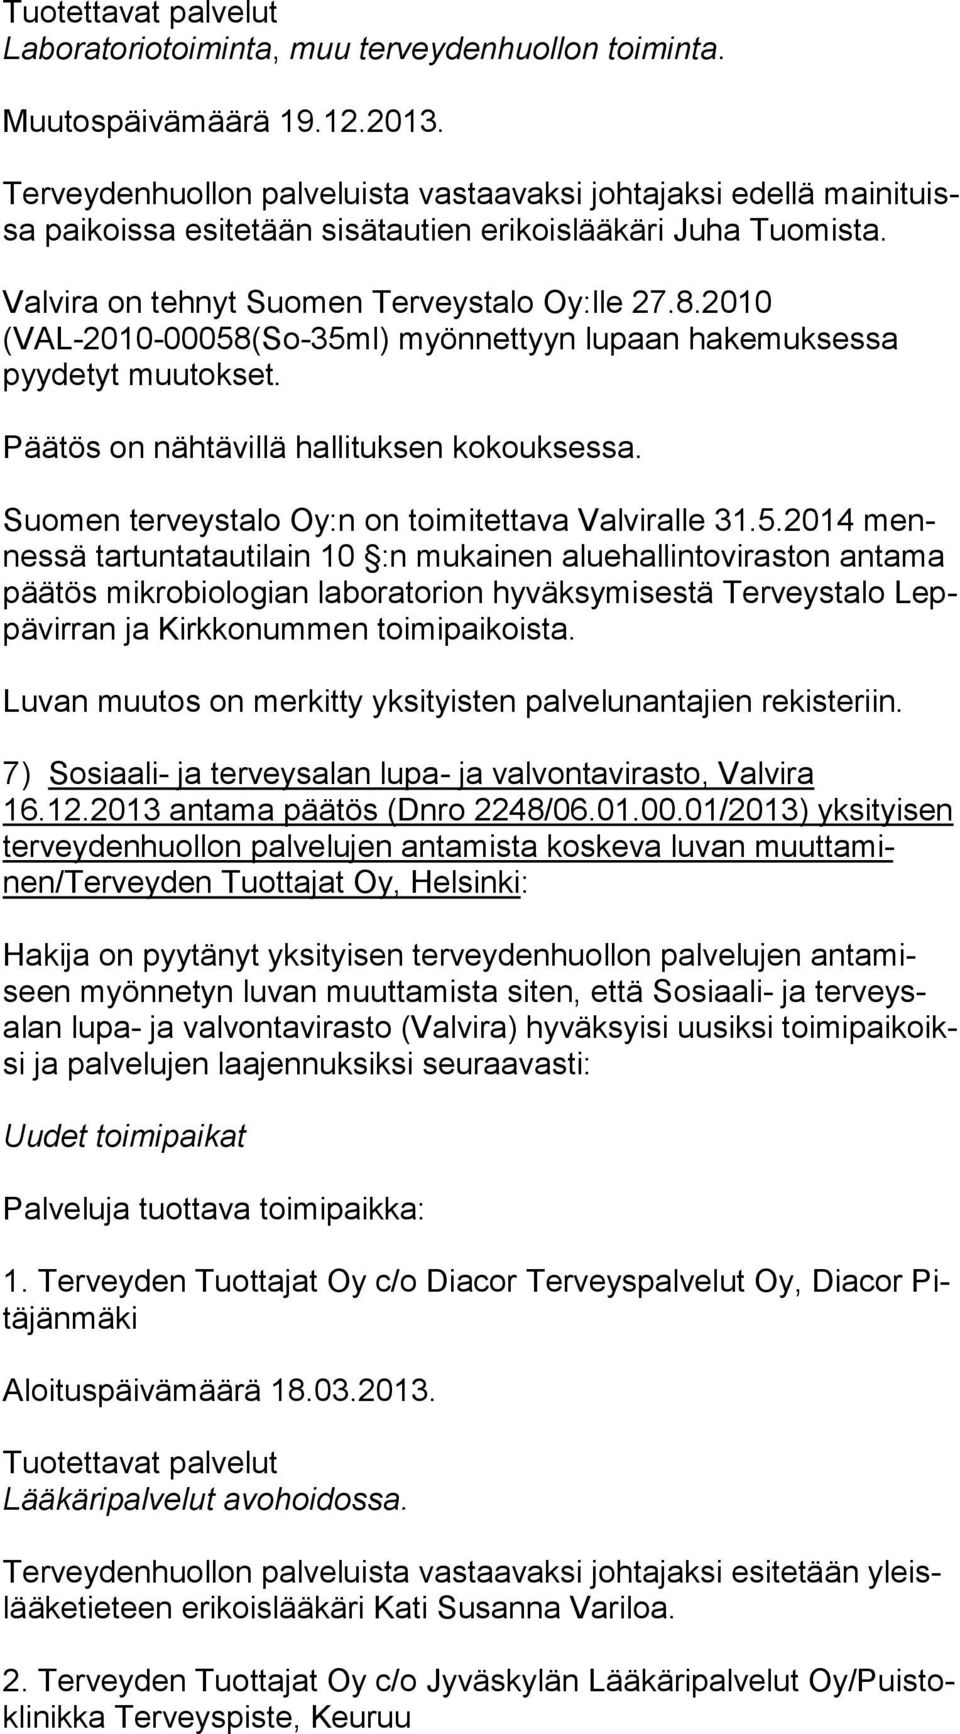 Suomen terveystalo Oy:n on toimitettava Valviralle 31.5.